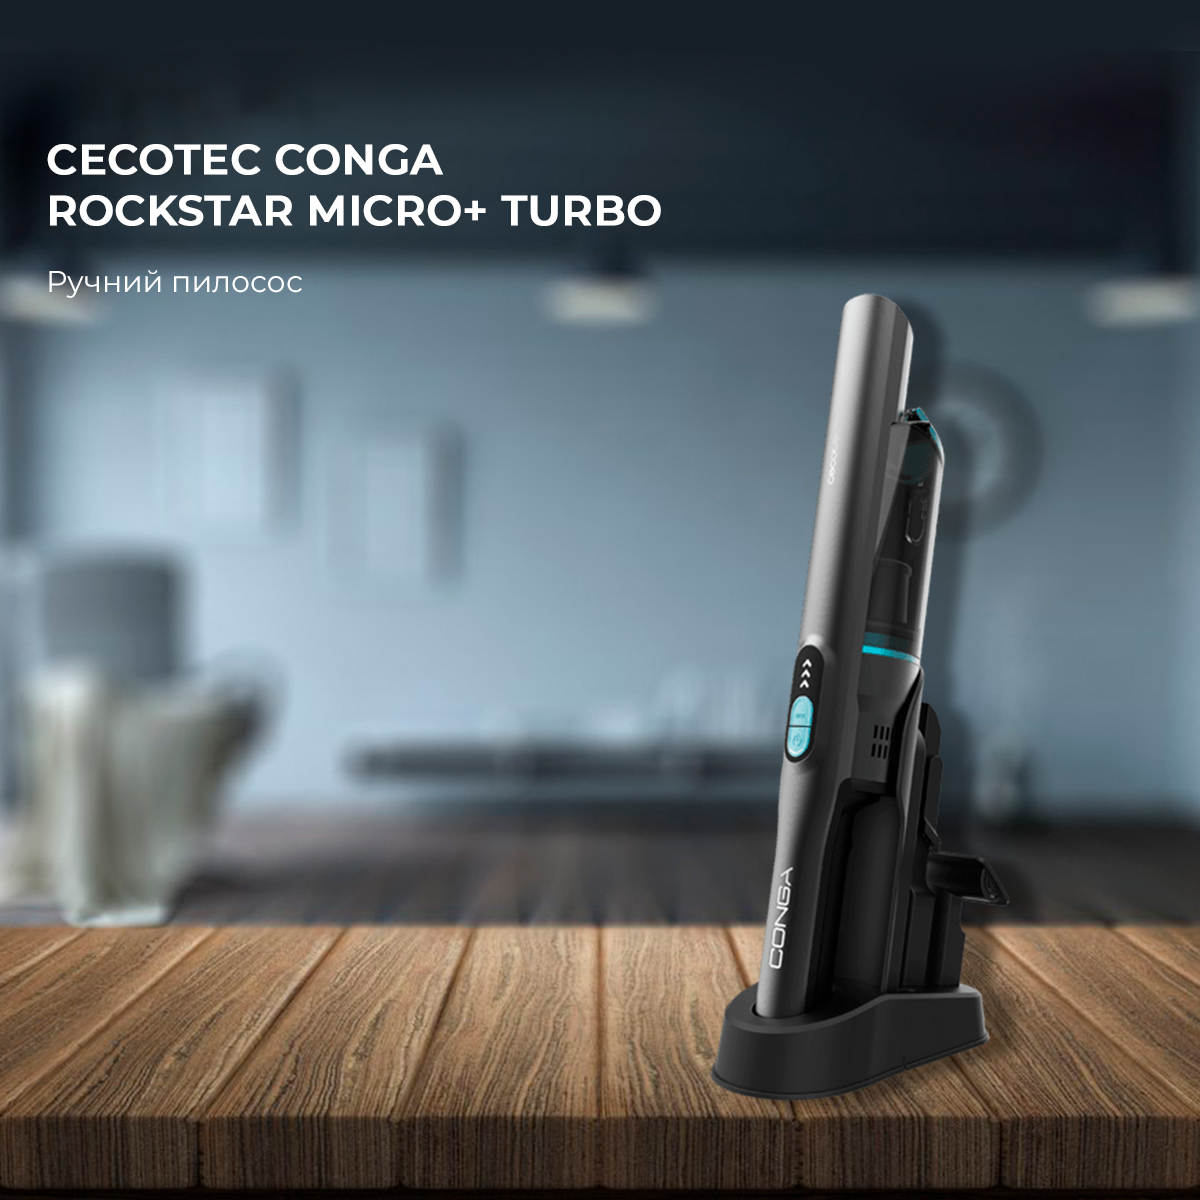 Пылесос Cecotec Conga Rockstar Micro+ Turbo - купить по низкой цене в Киеве,  Украине